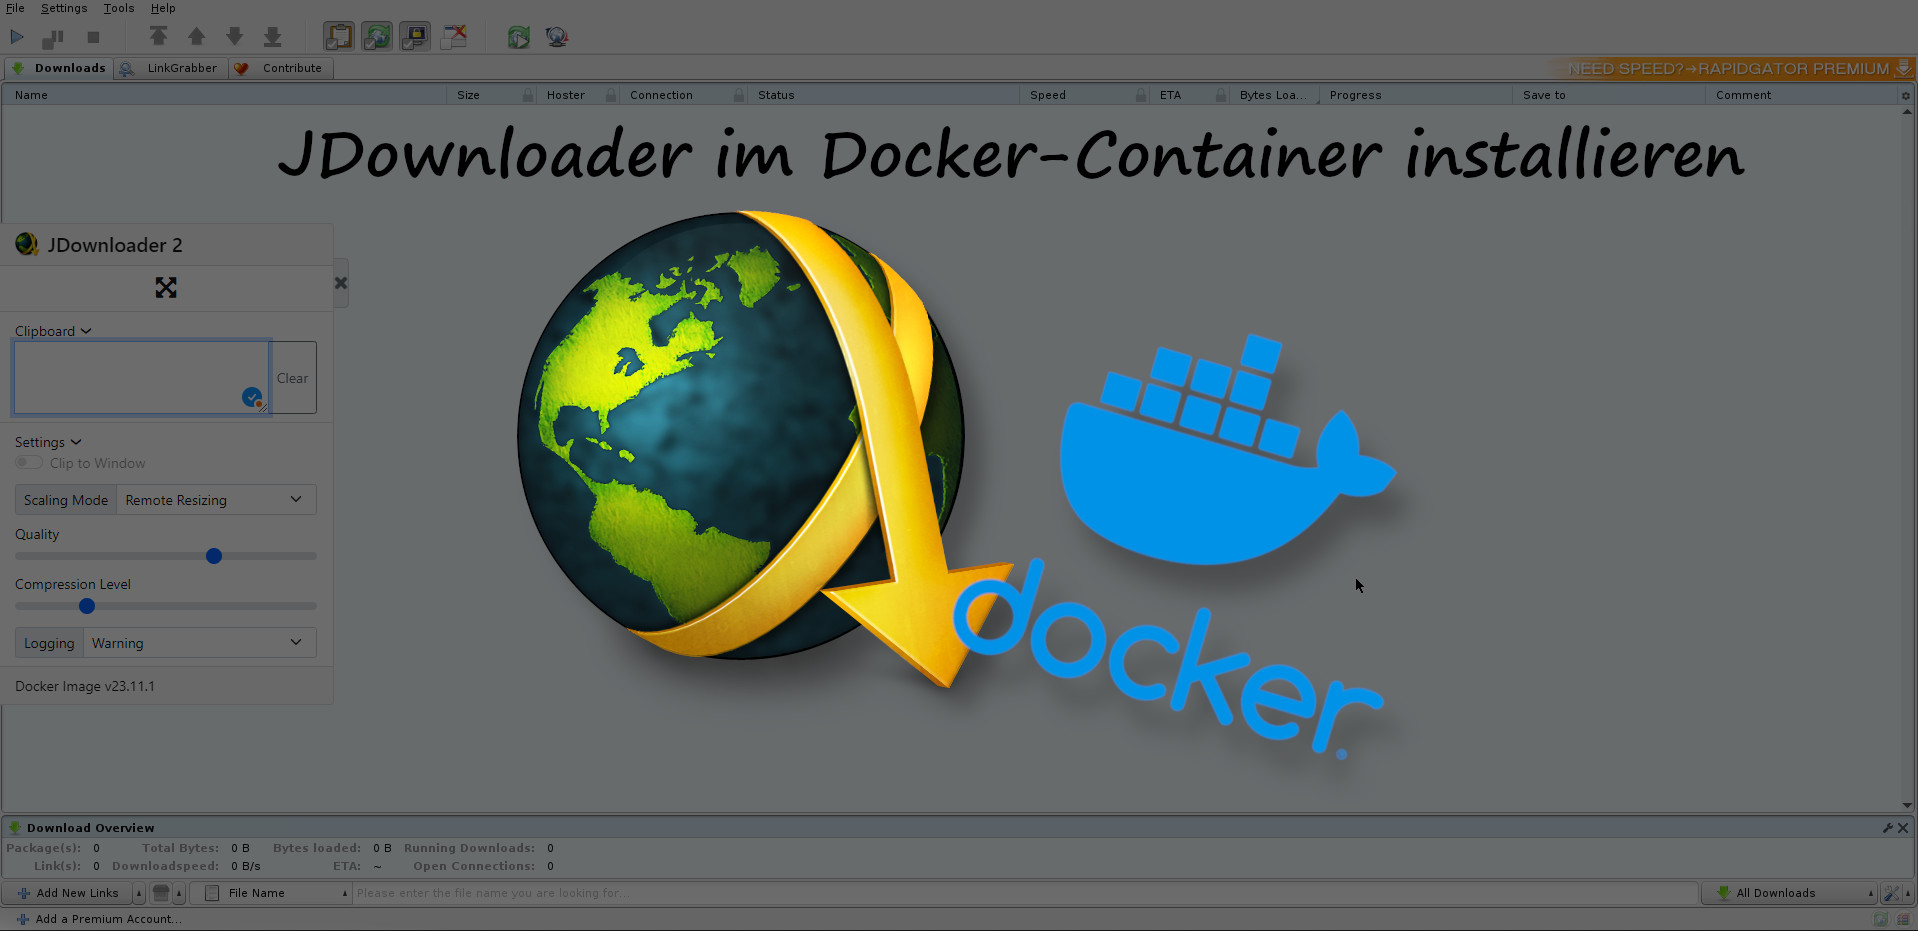 JDownloader 2 im Docker-Container installieren und perfekt nutzen